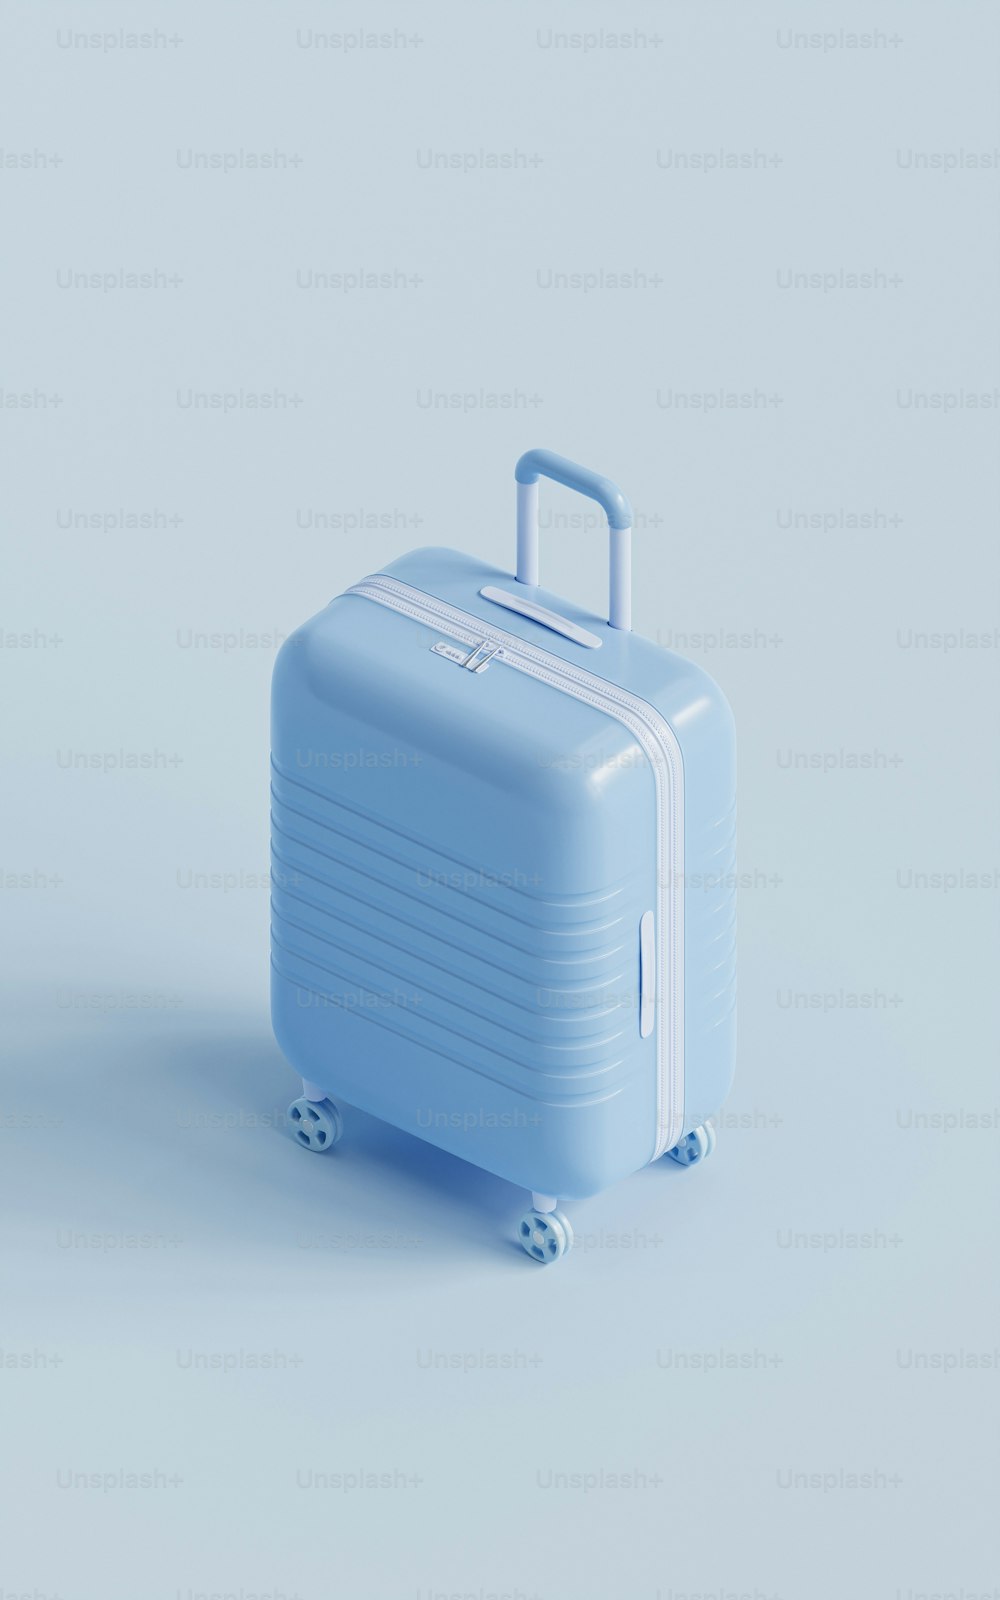 Un bagaglio blu seduto sopra un pavimento bianco